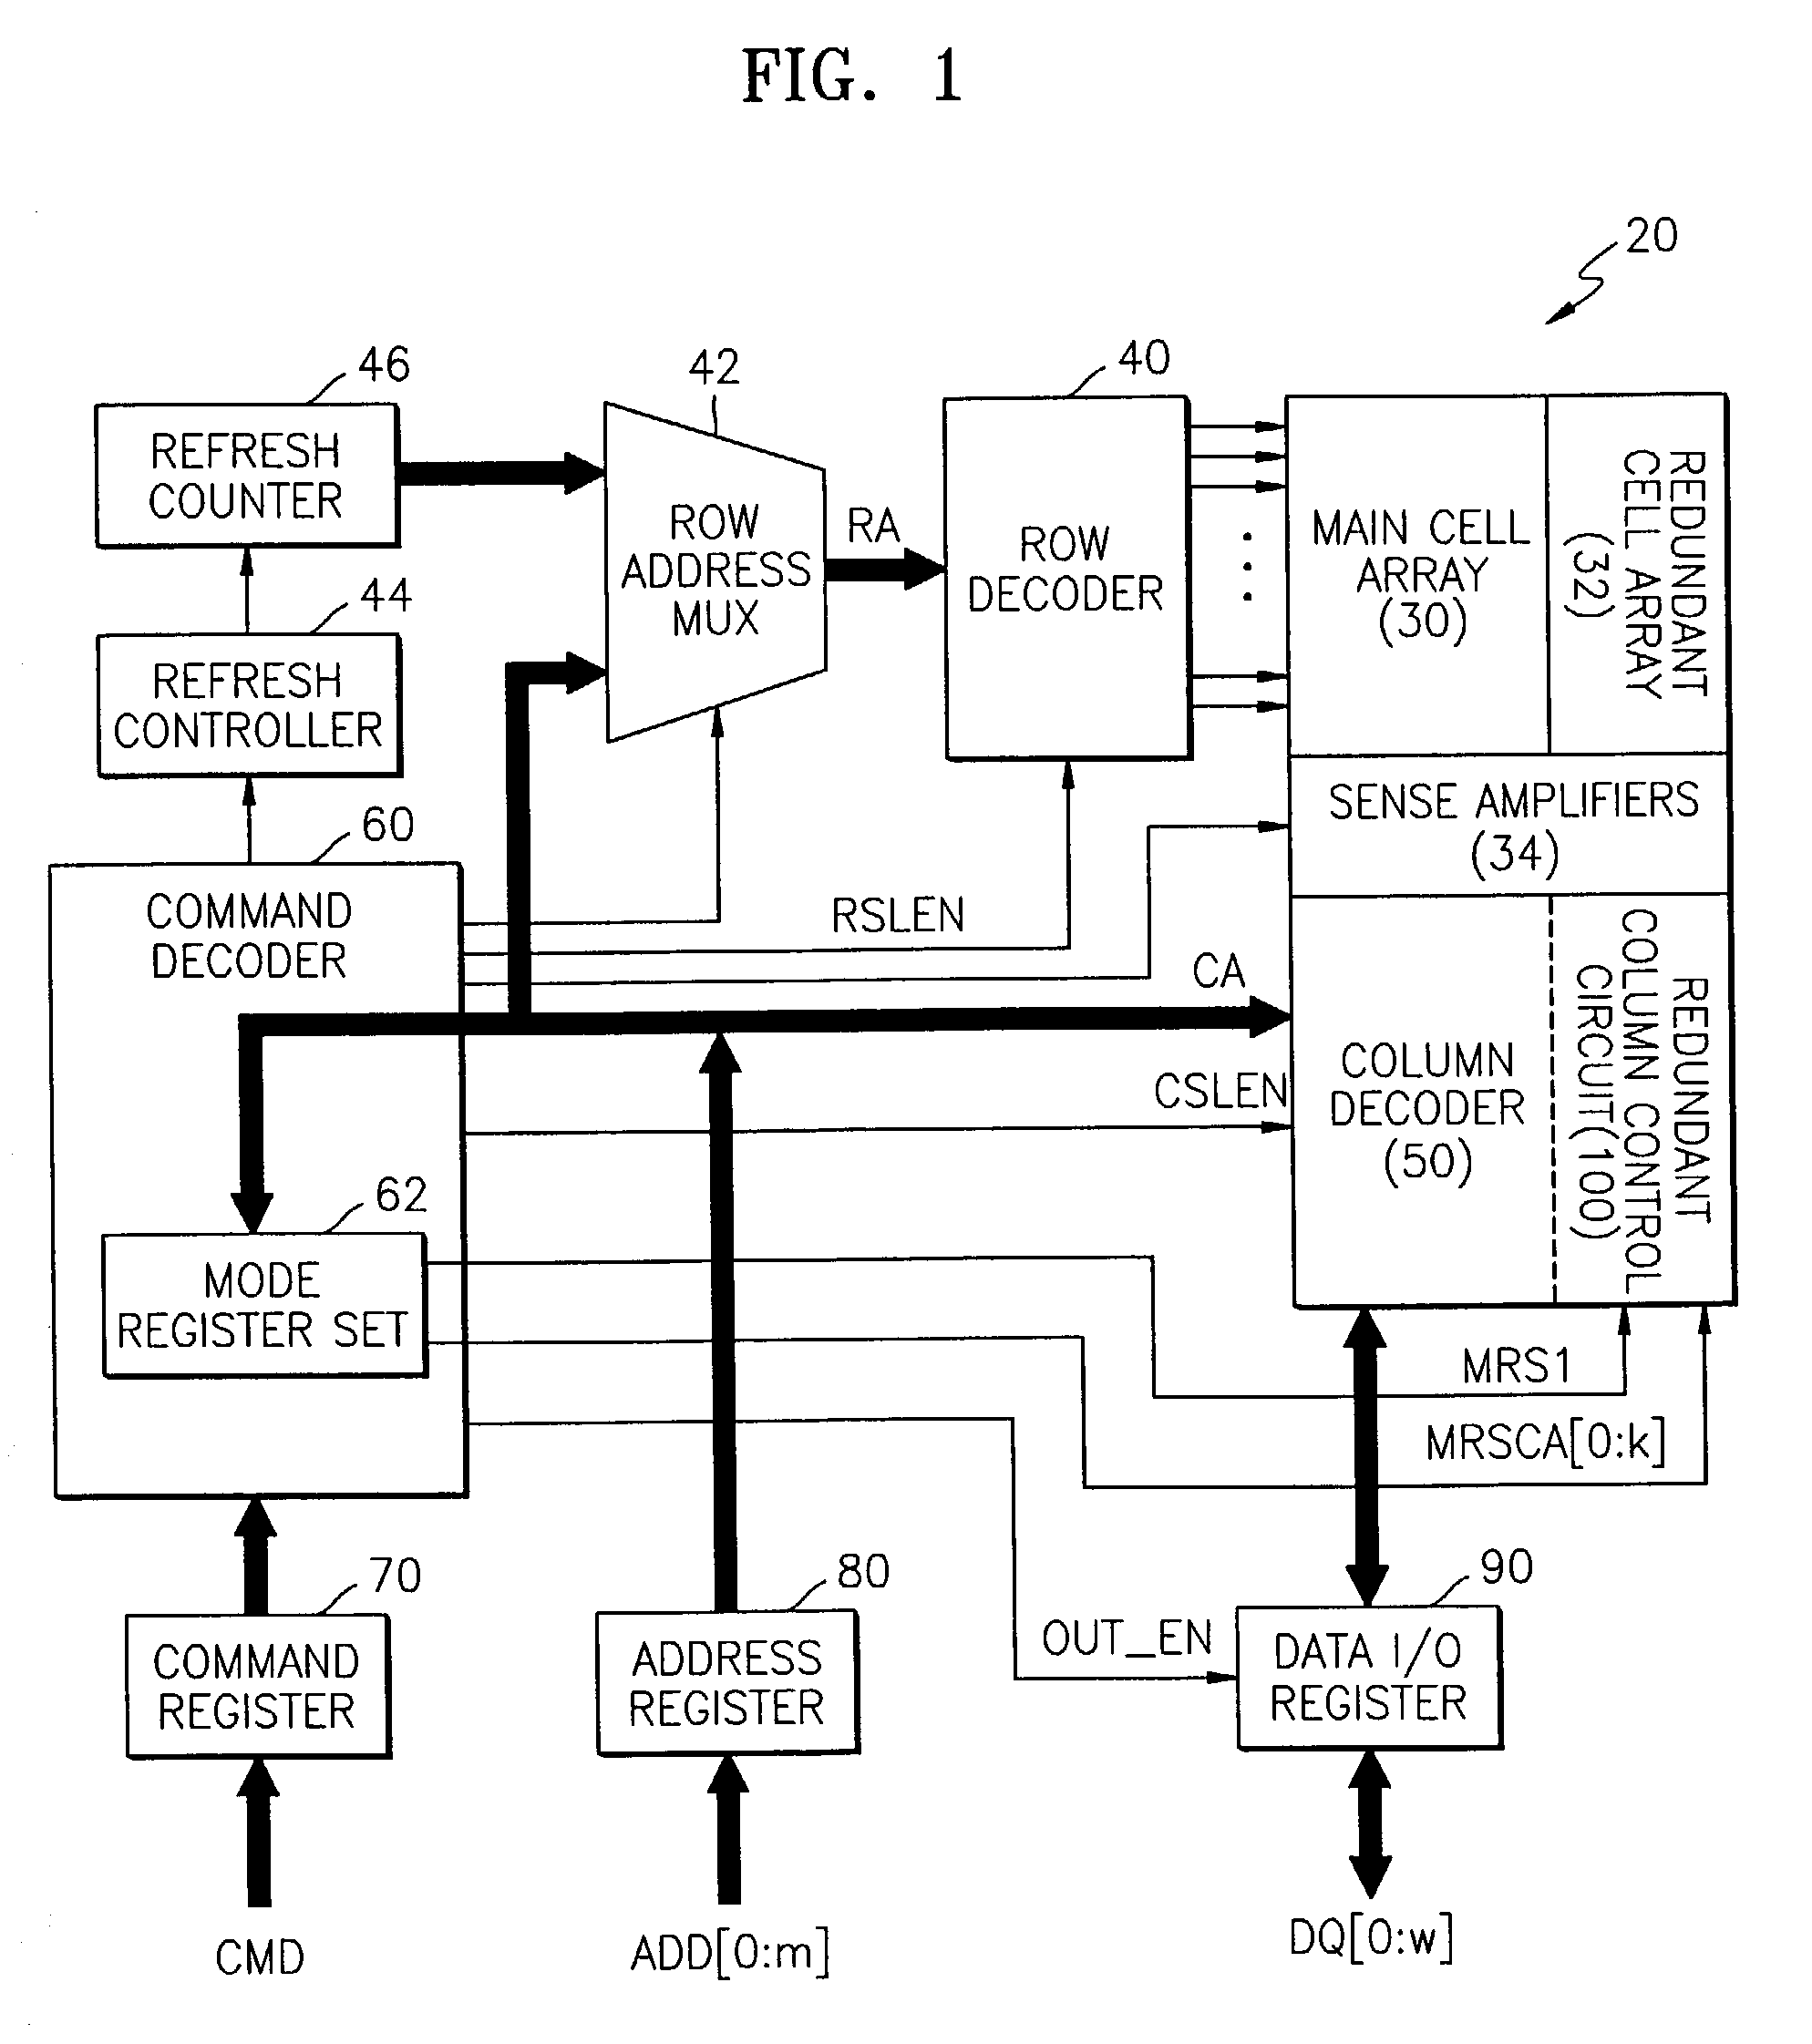 Semiconductor memory device post-repair circuit and method